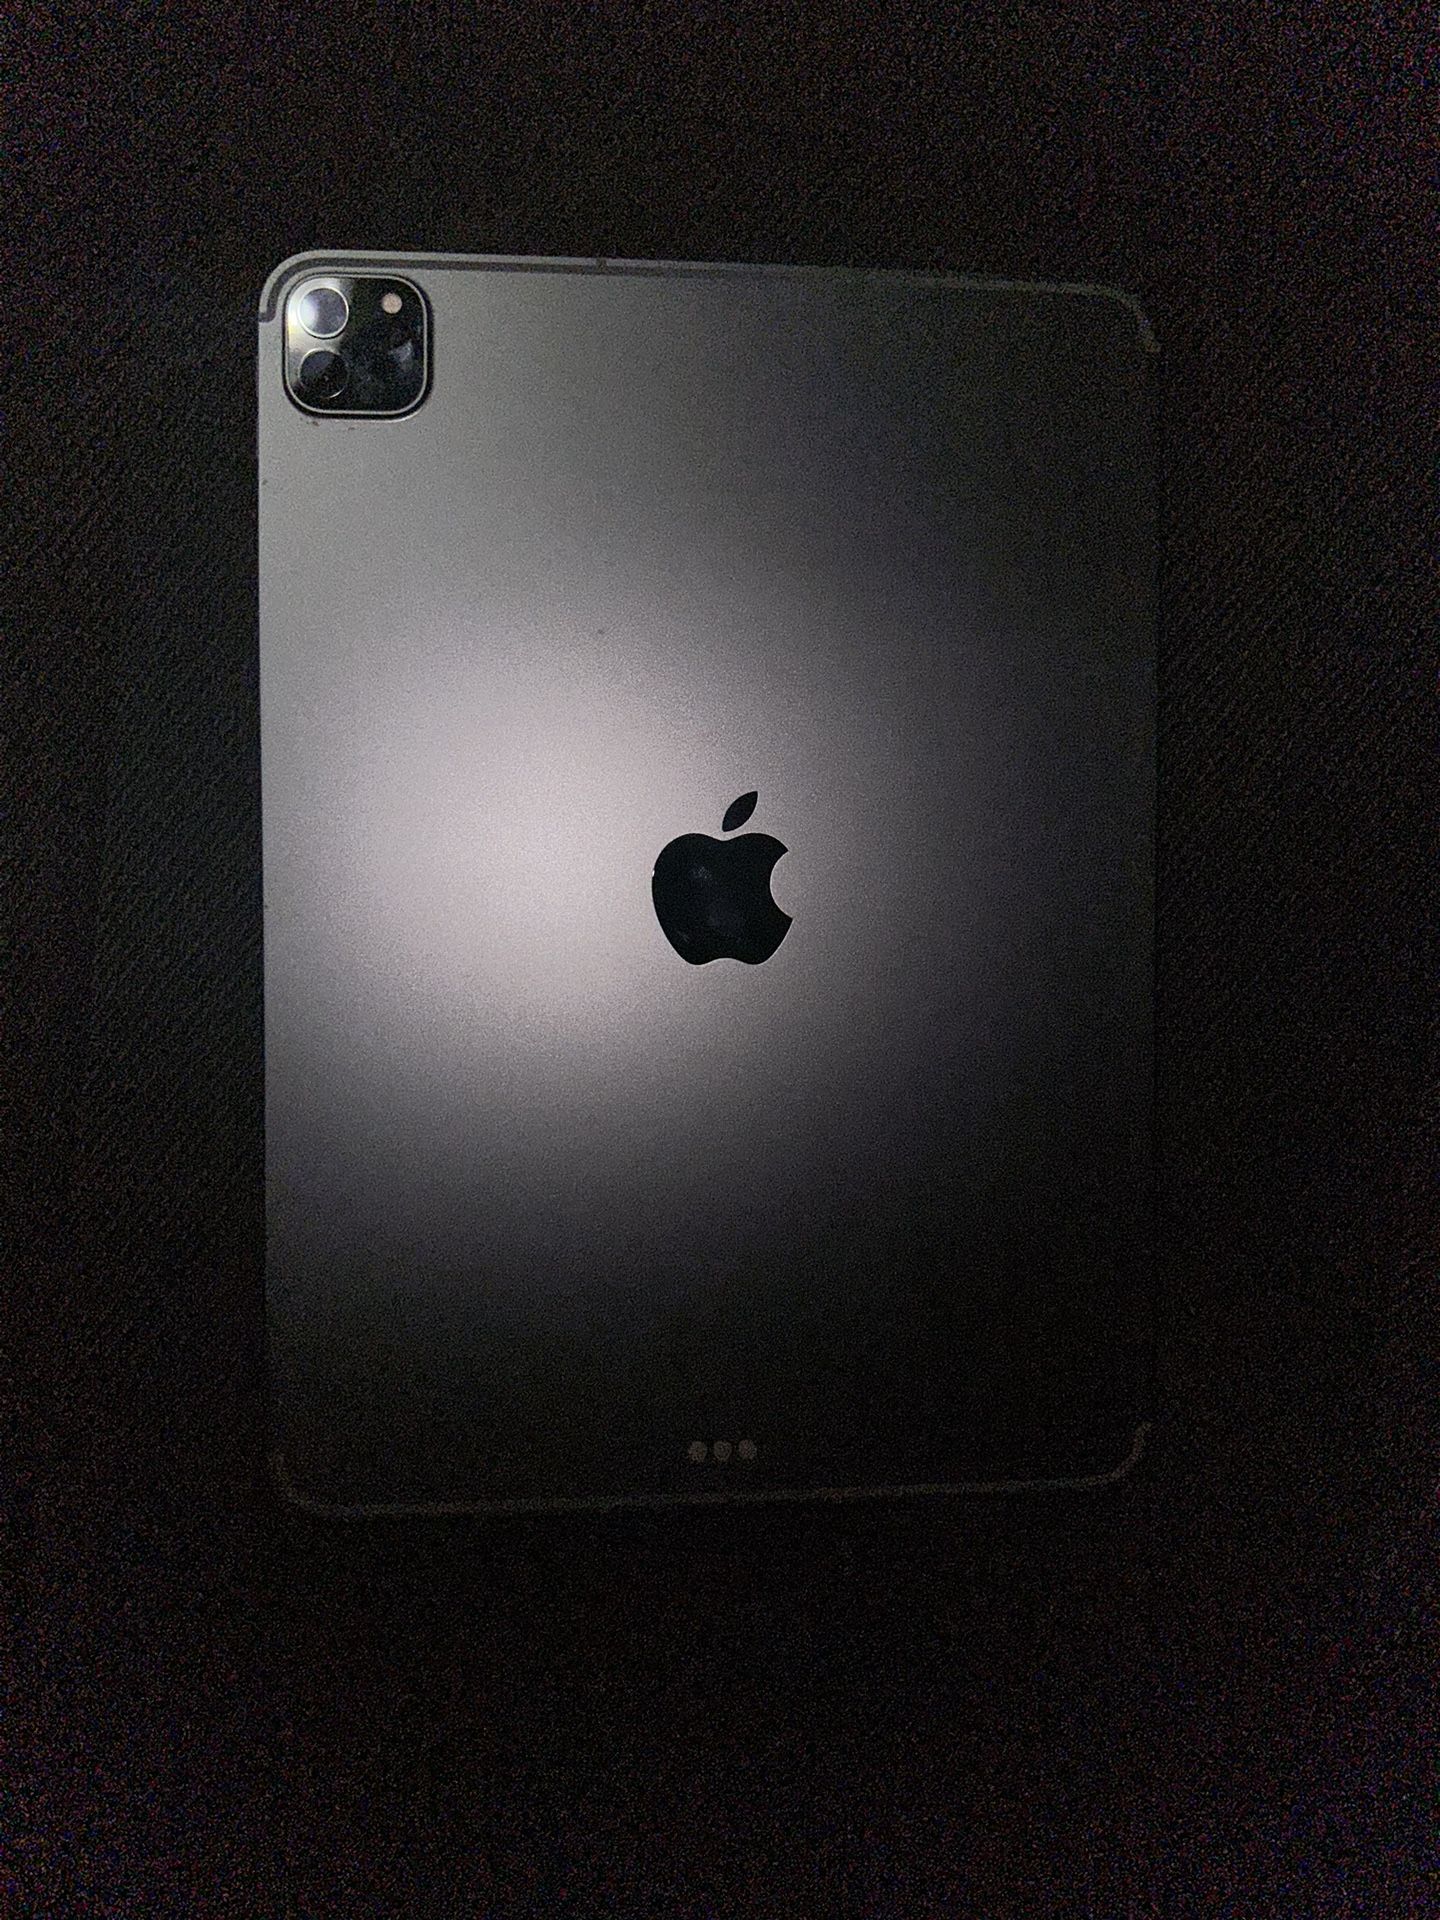 Apple iPad 11 Inch